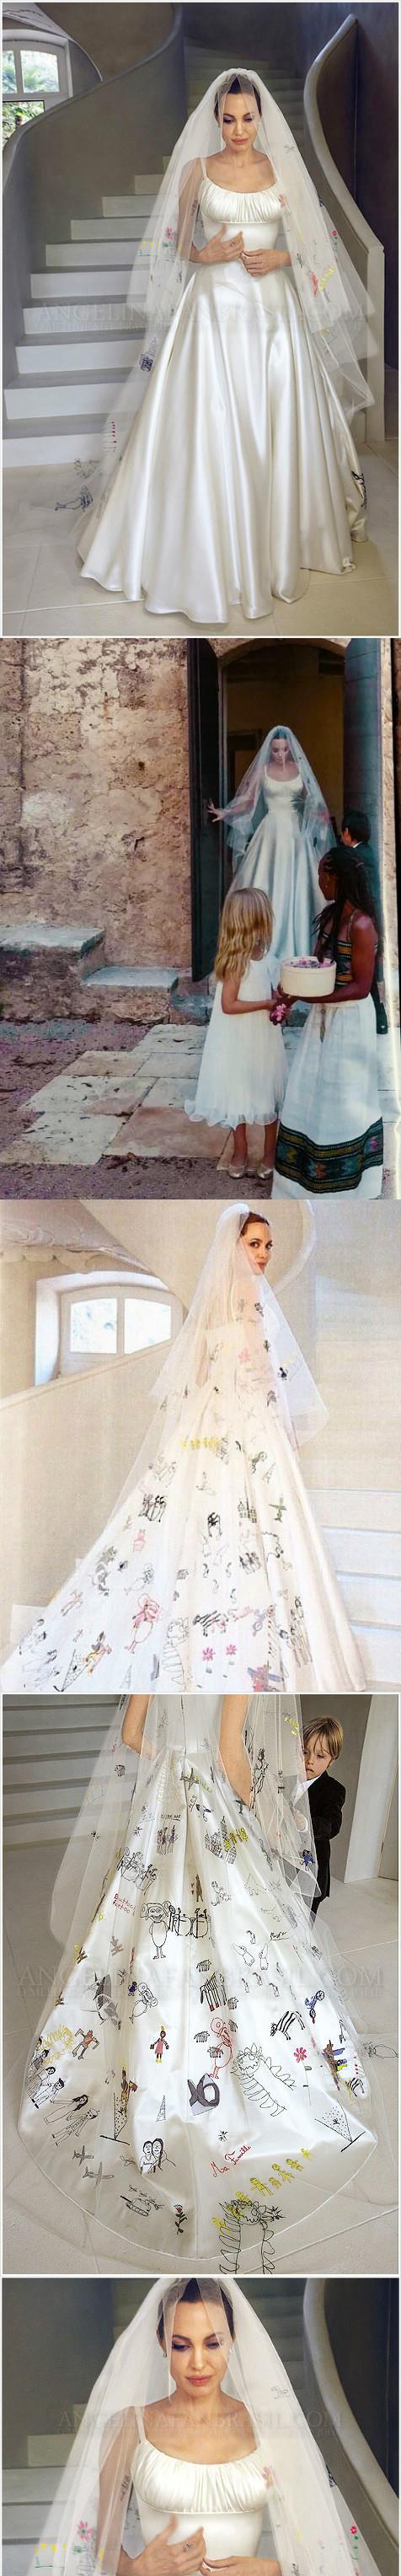 安吉丽娜·朱莉婚纱造型照片_婚纱摄影图片#婚纱摄影 #婚纱造型 #明星婚纱照 